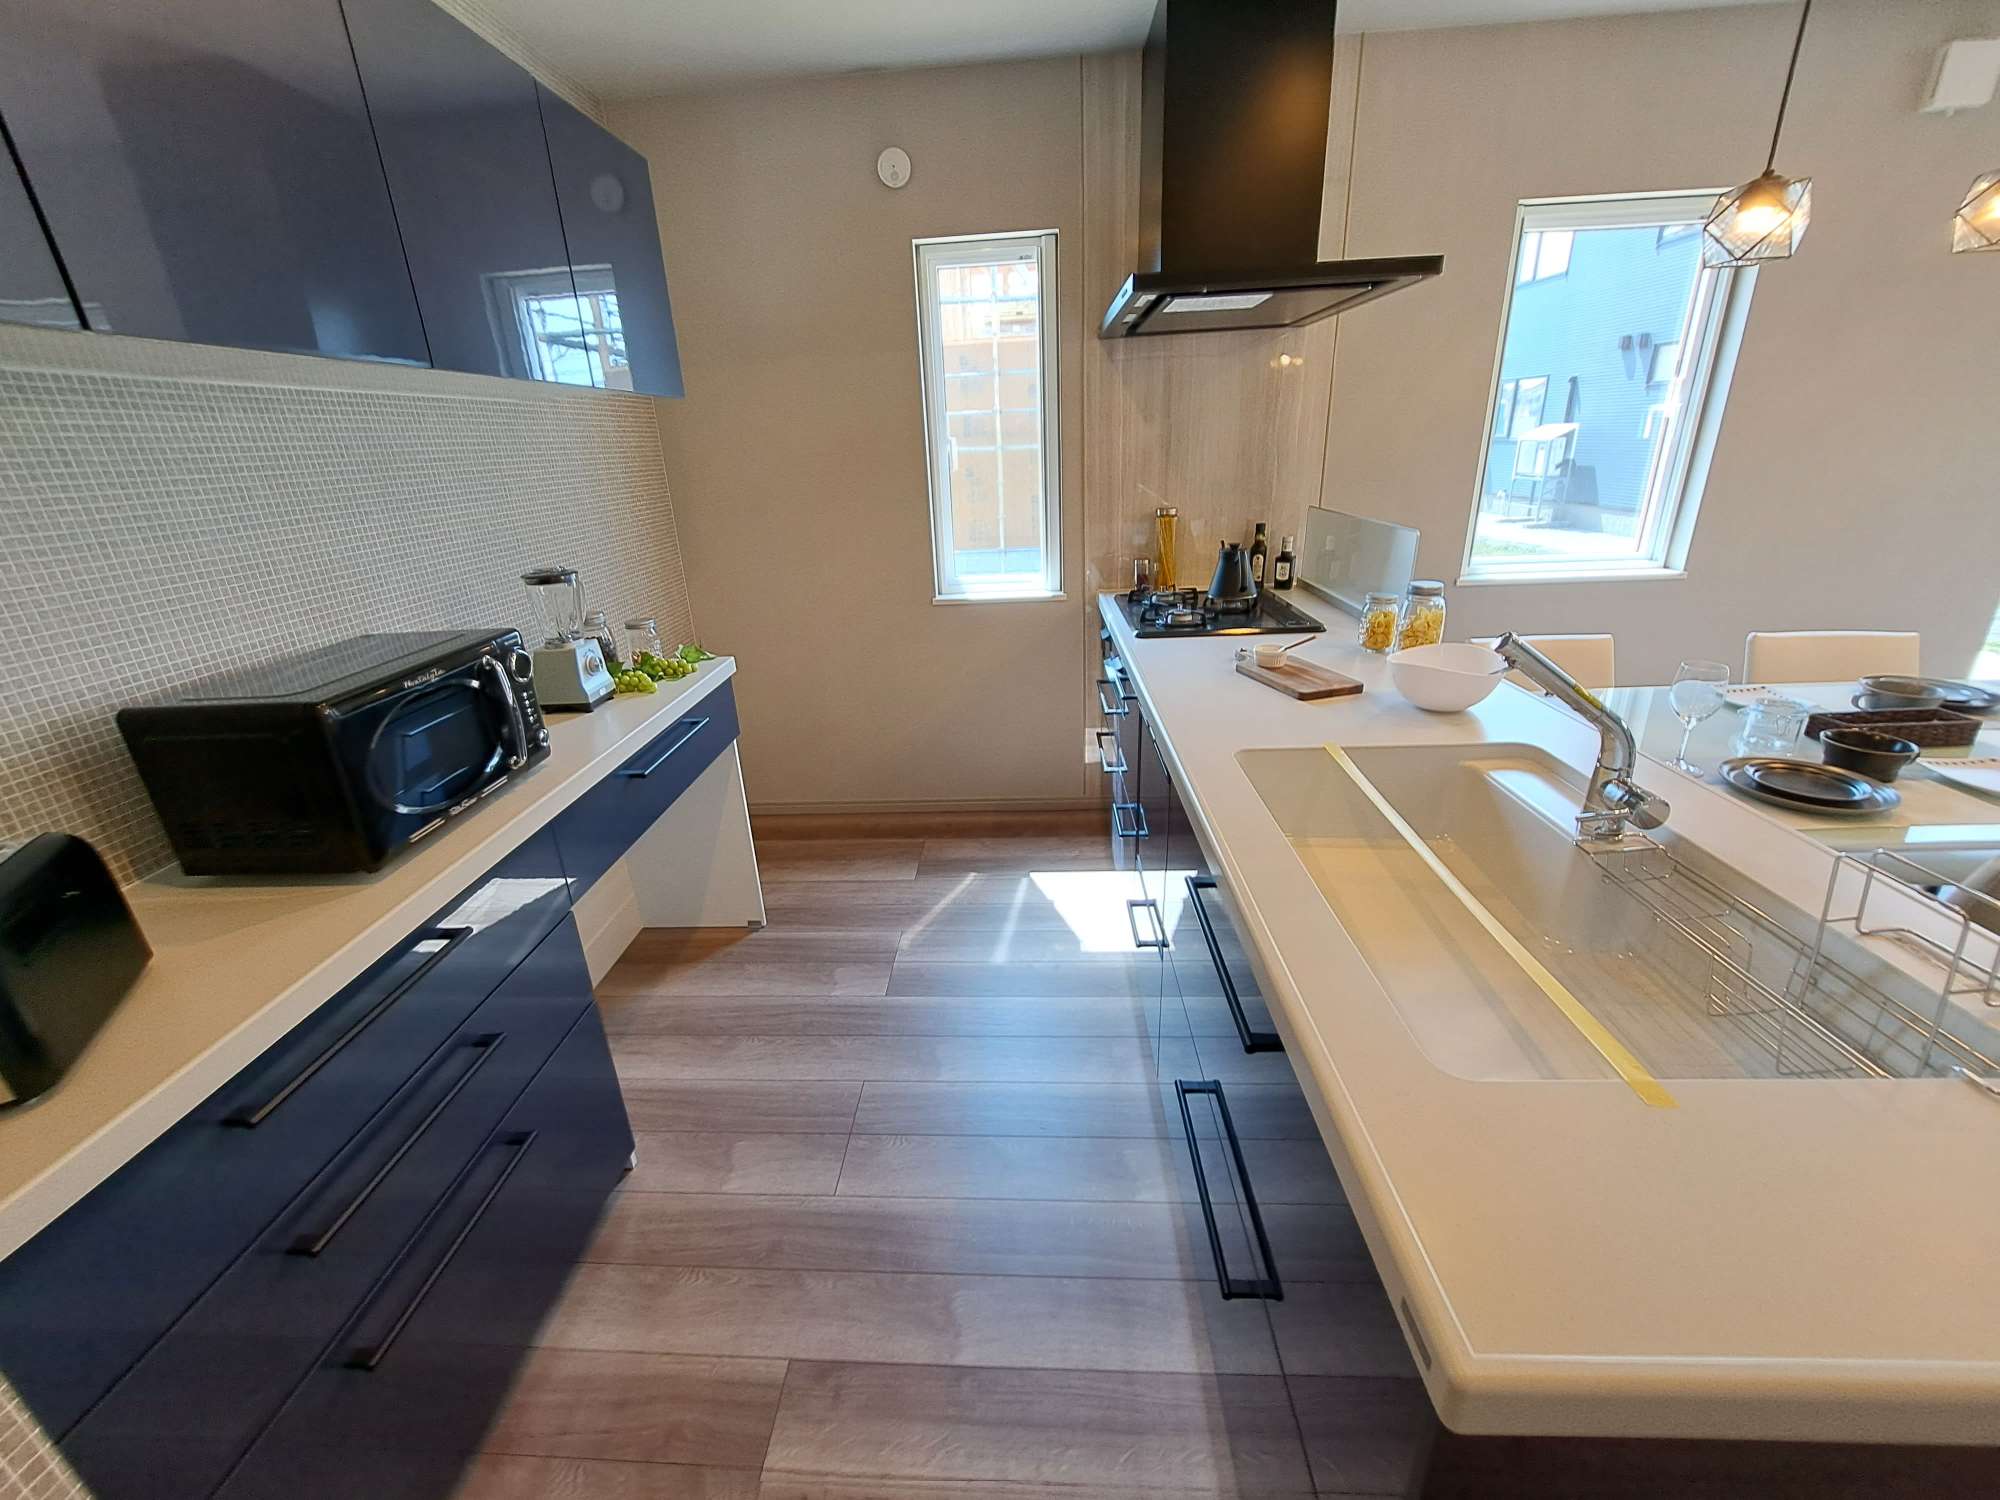 キッチン - キッチン天板は人工大理石です。食洗器付きで後片付けが楽ちん。建物内ではキッチンと食器棚の動線を確認できます。 -  - 